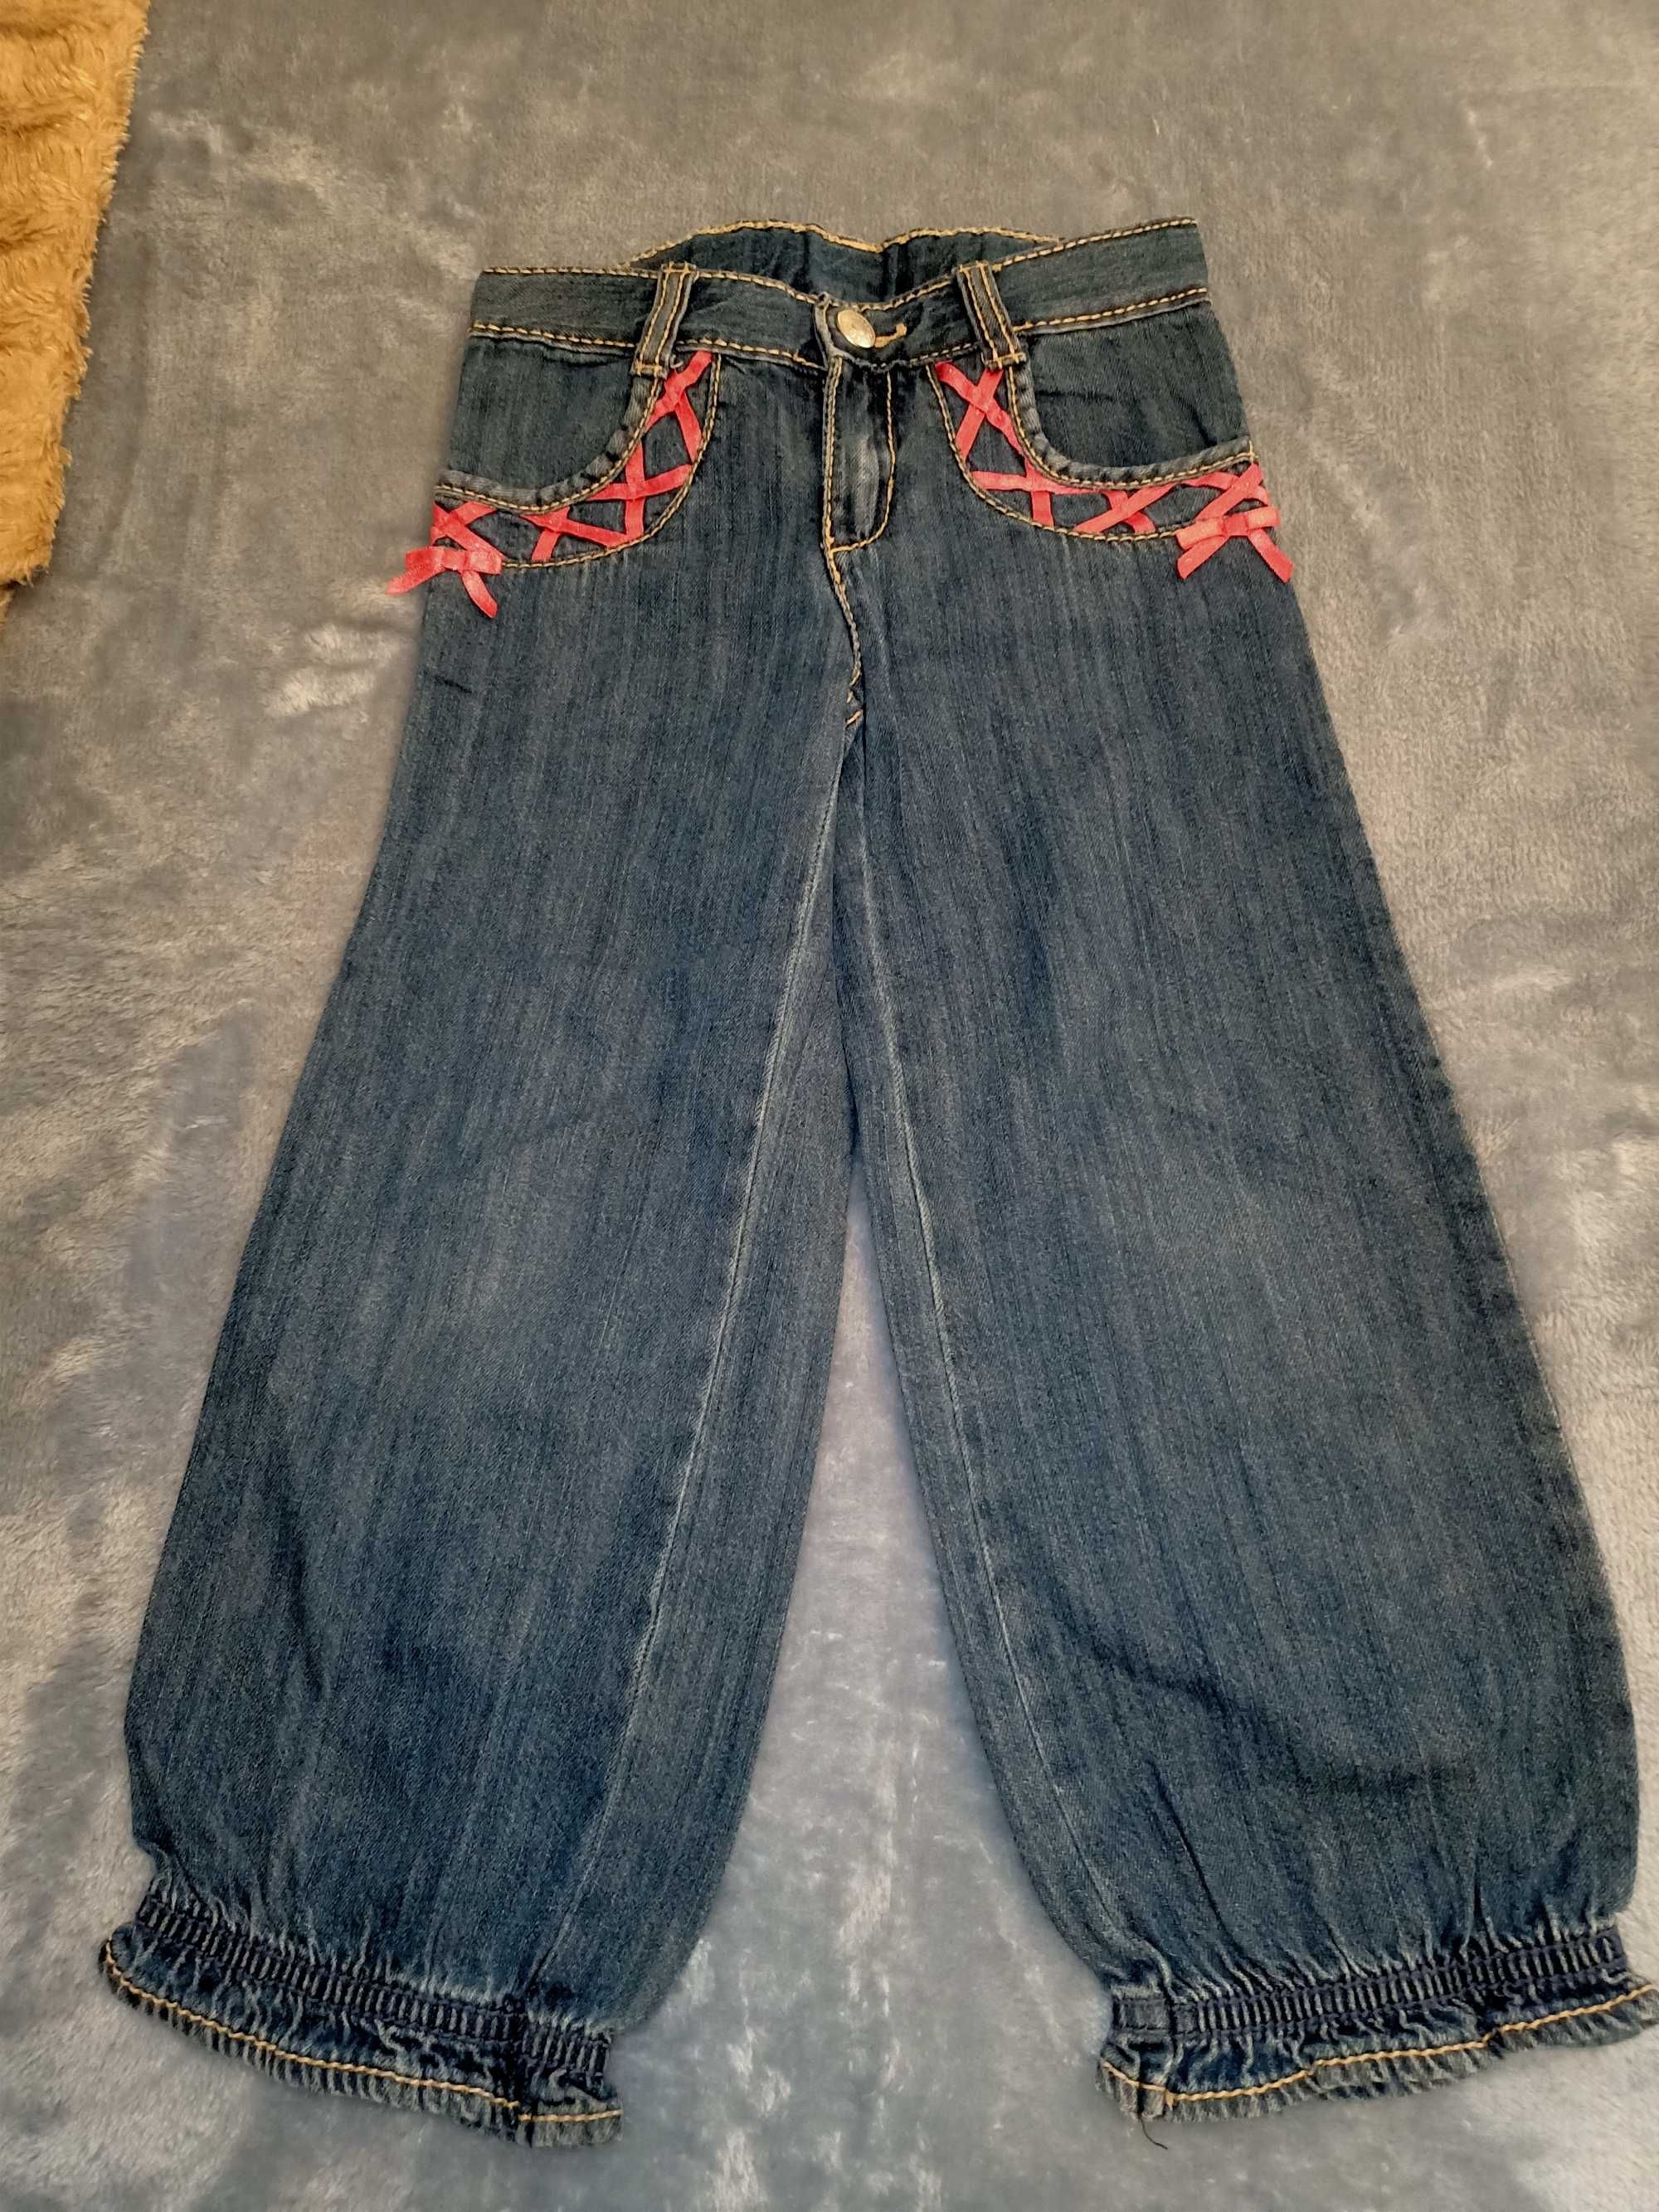 Продам джинсы 152,134 ,штаны для девочки 2-6